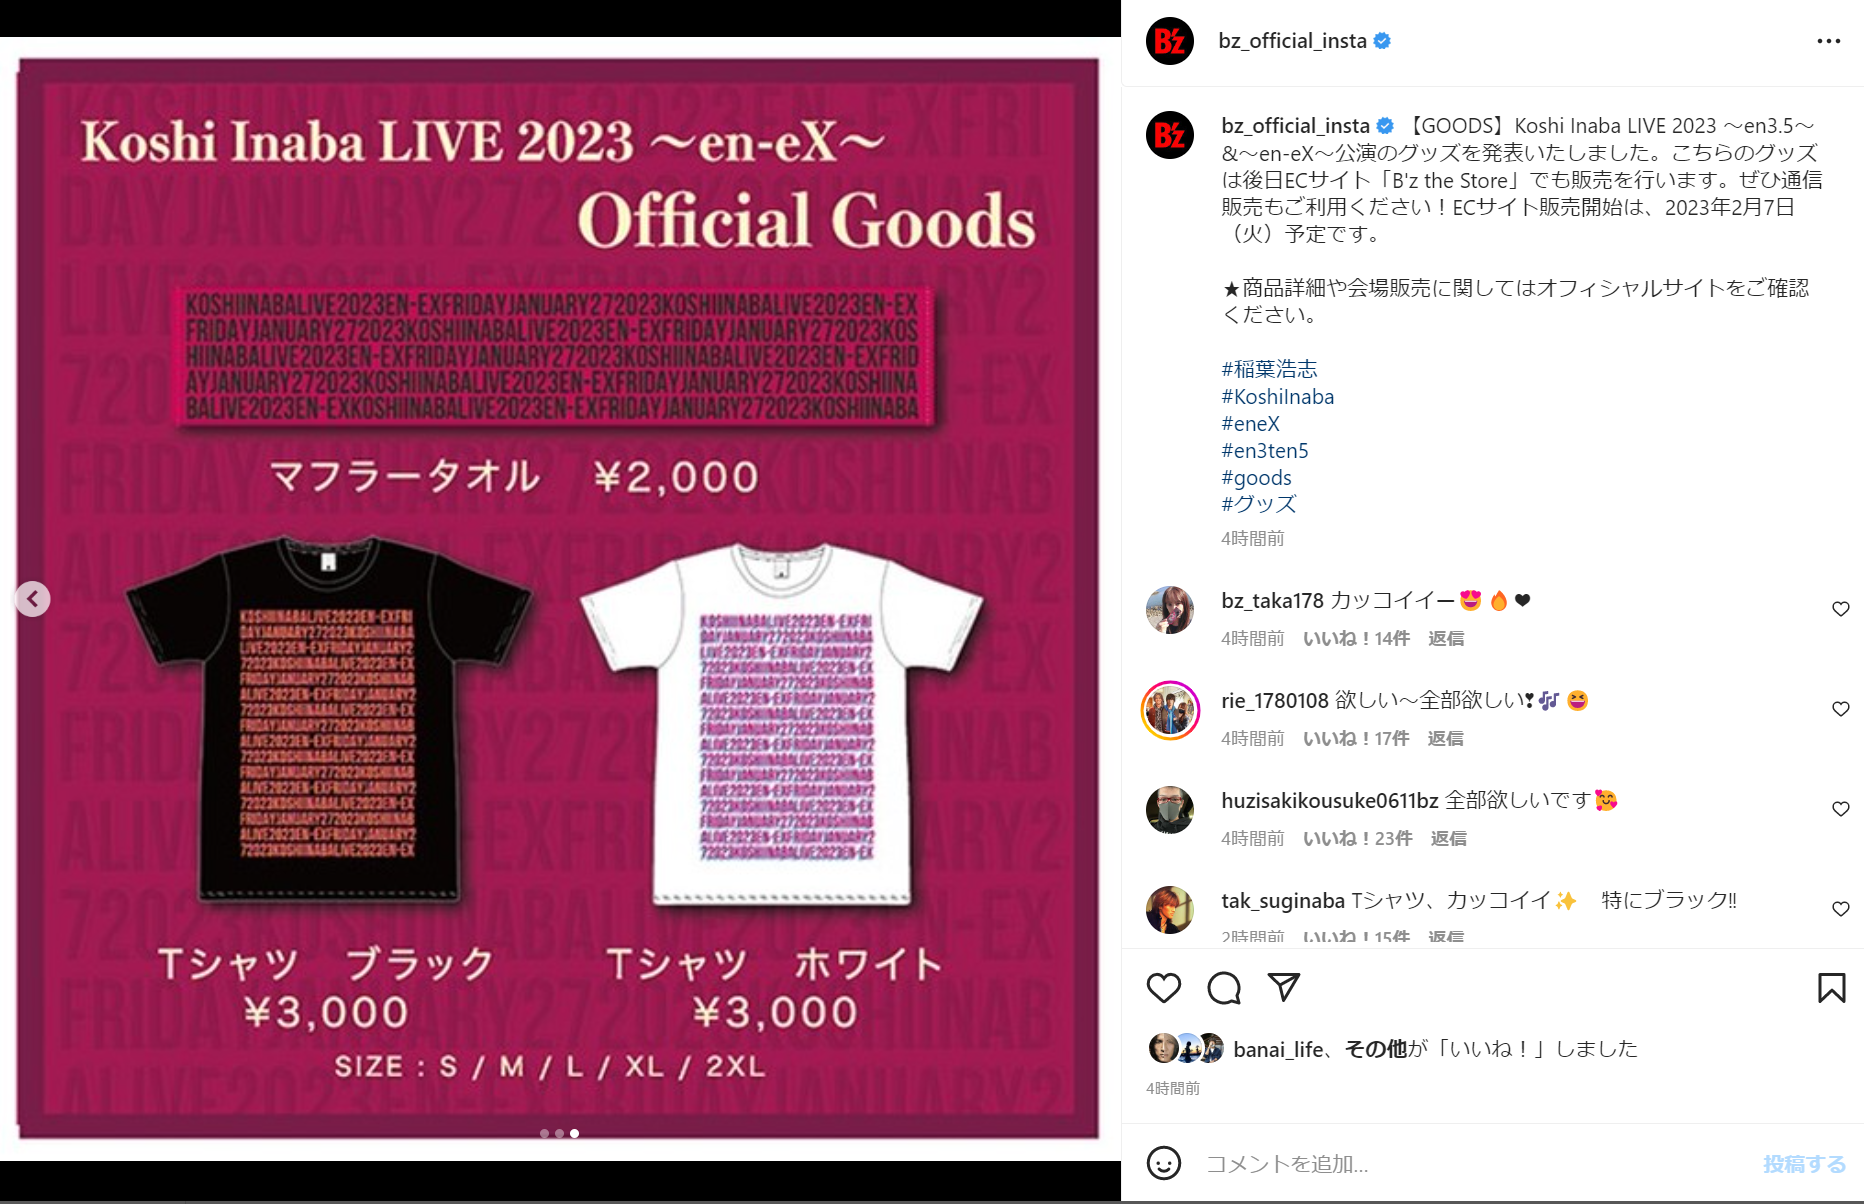 Koshi Inaba LIVE 2023 〜en-eX〜』のグッズ販売が発表 Tシャツ2種と